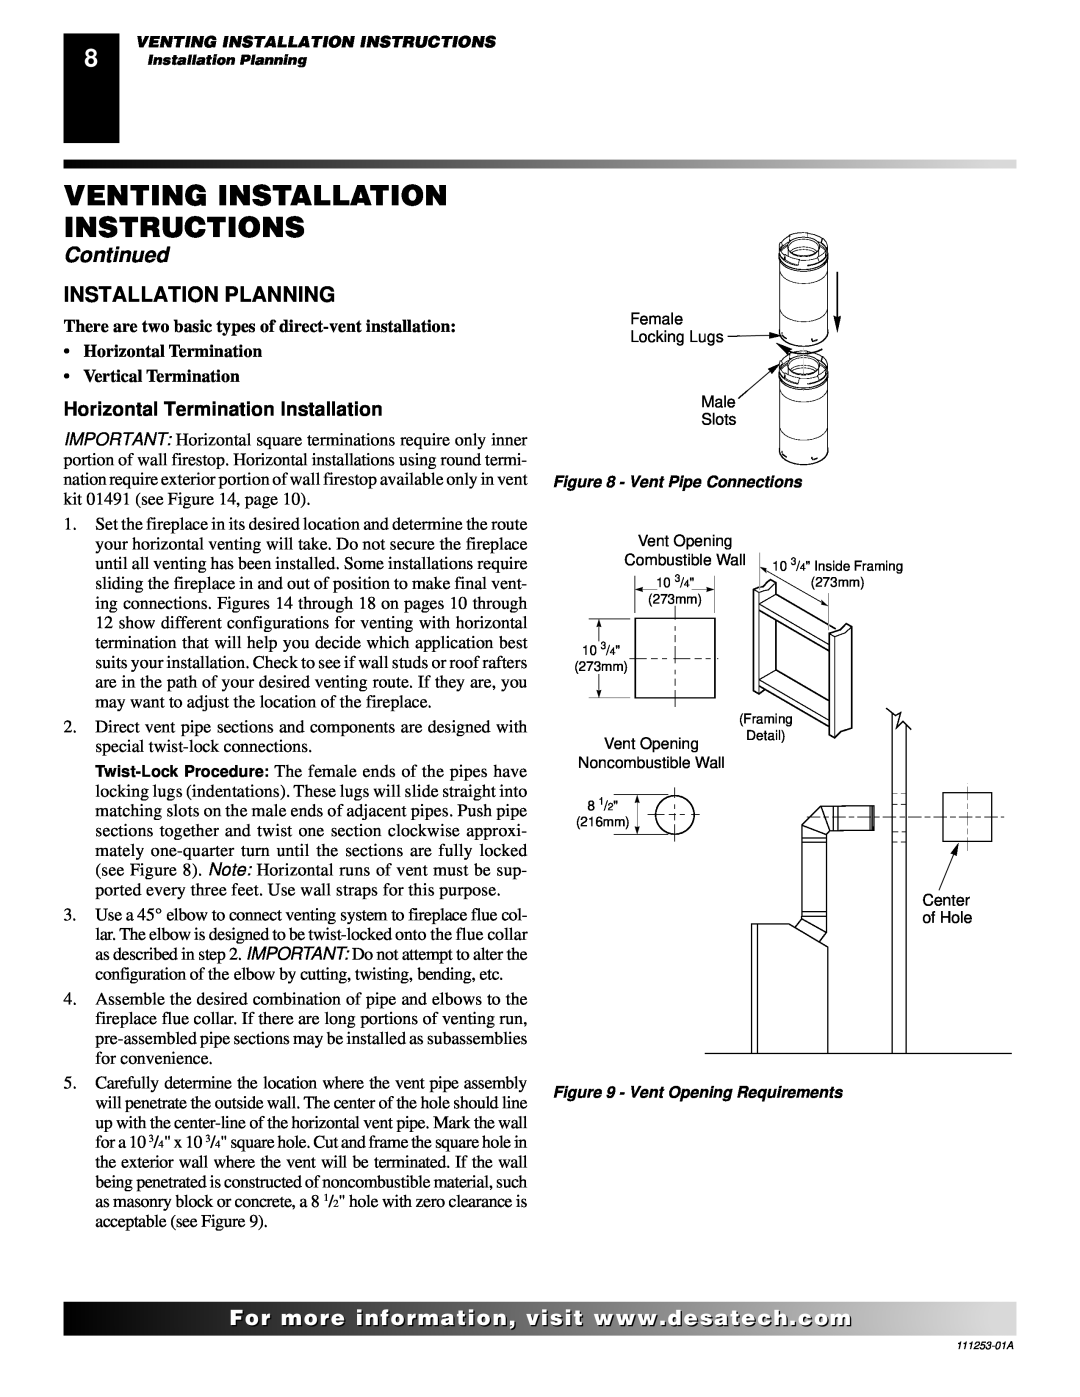 Desa (V)V36ENA(1) Installation Planning, Horizontal Termination Installation, Venting Installation Instructions, Continued 